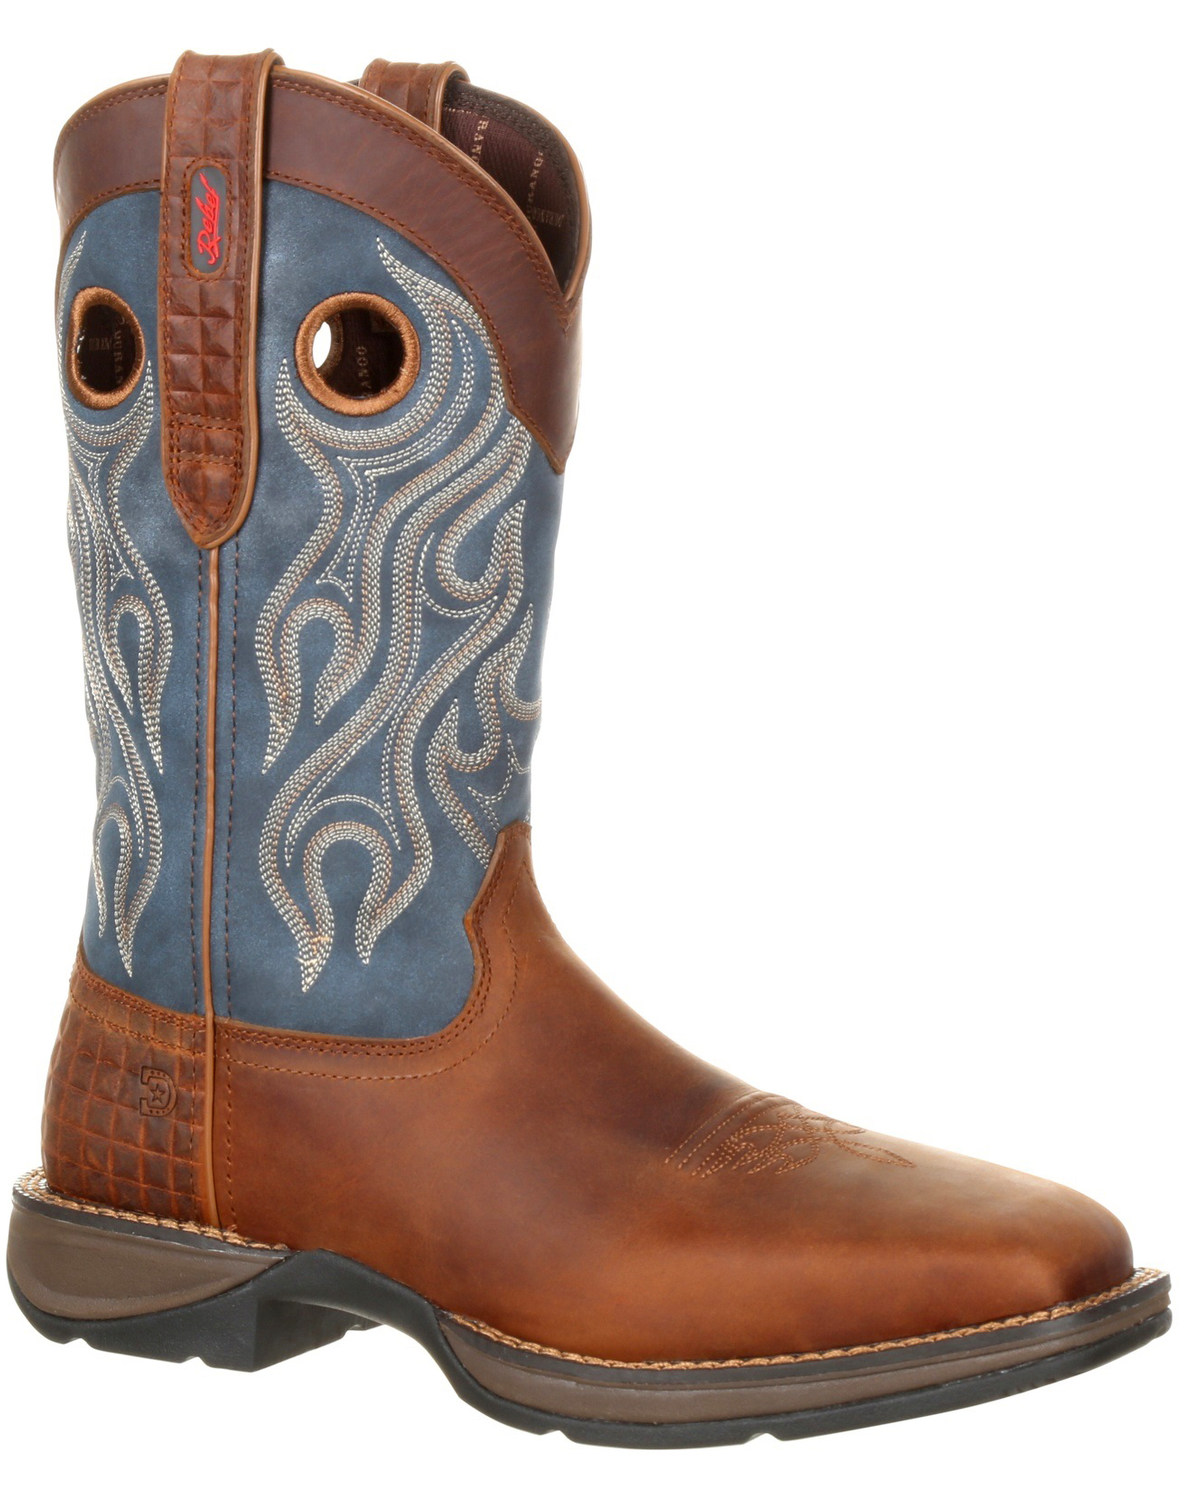 Durango Men's Rebel Western Work Boots - Steel Toe